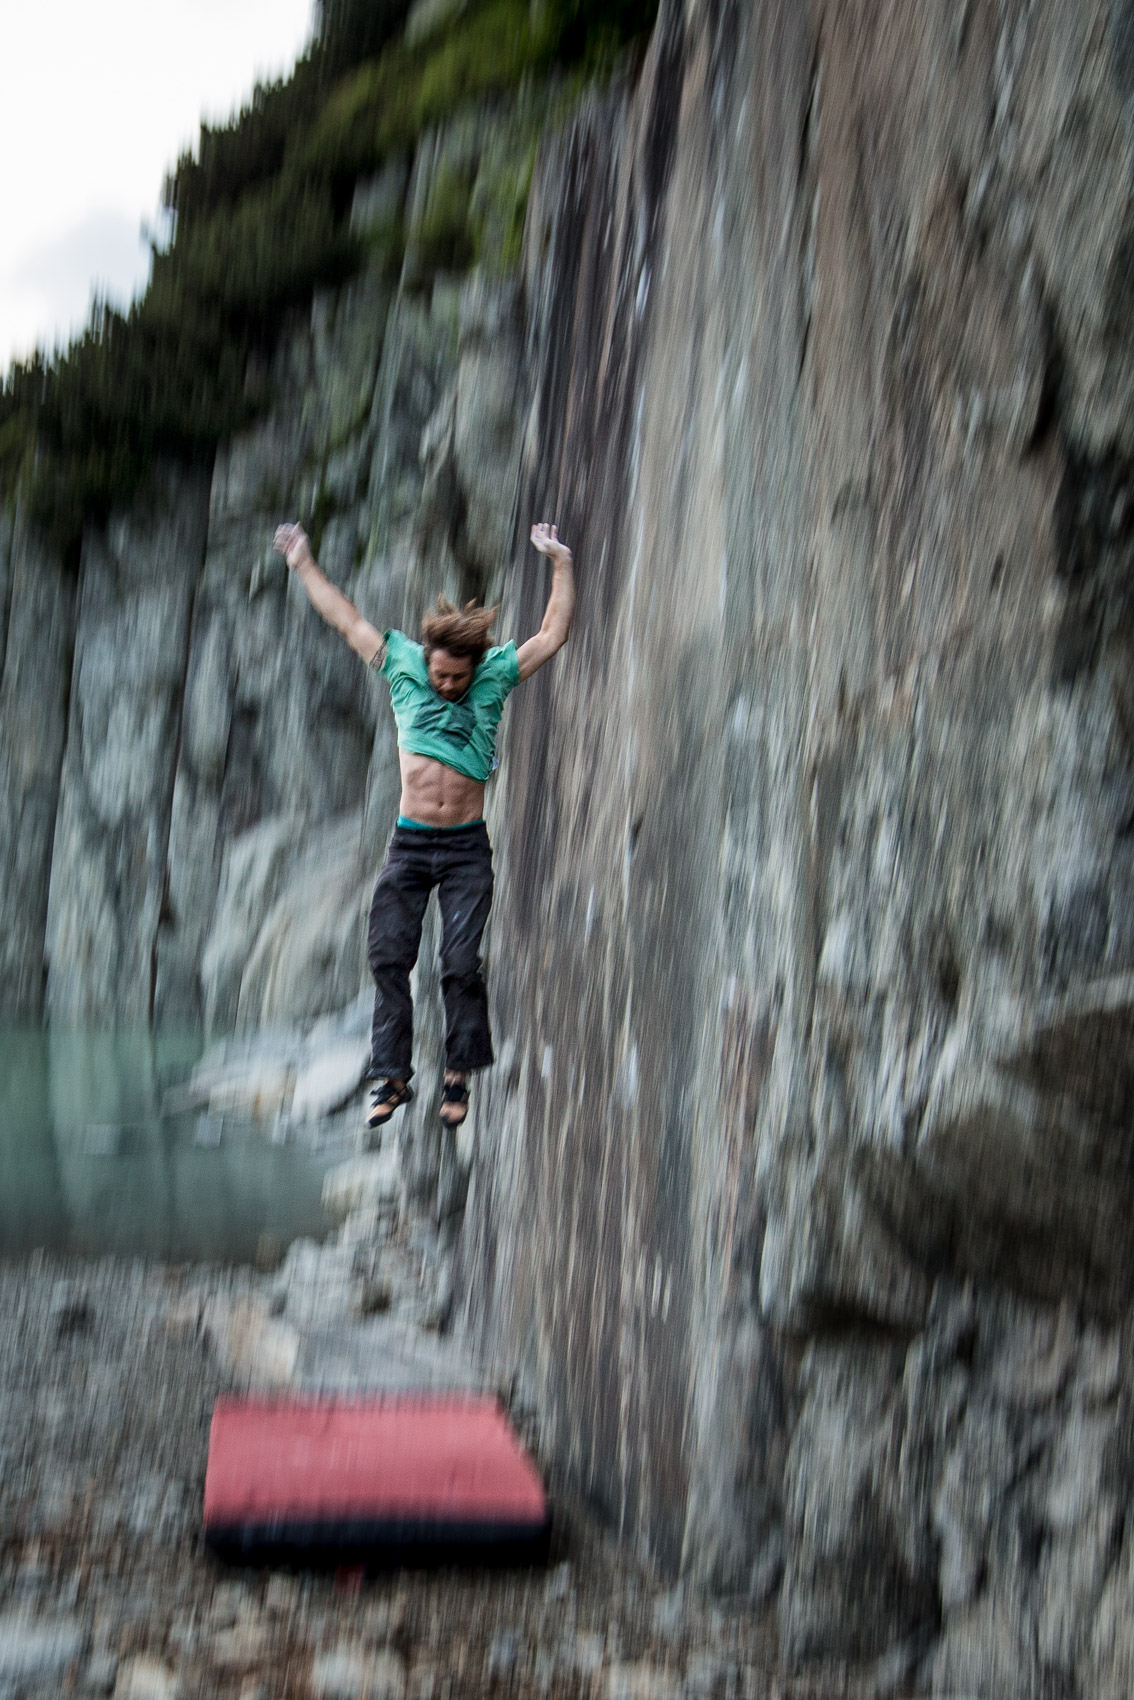 Falling | Stefan Kuerzi - Climbing Photography